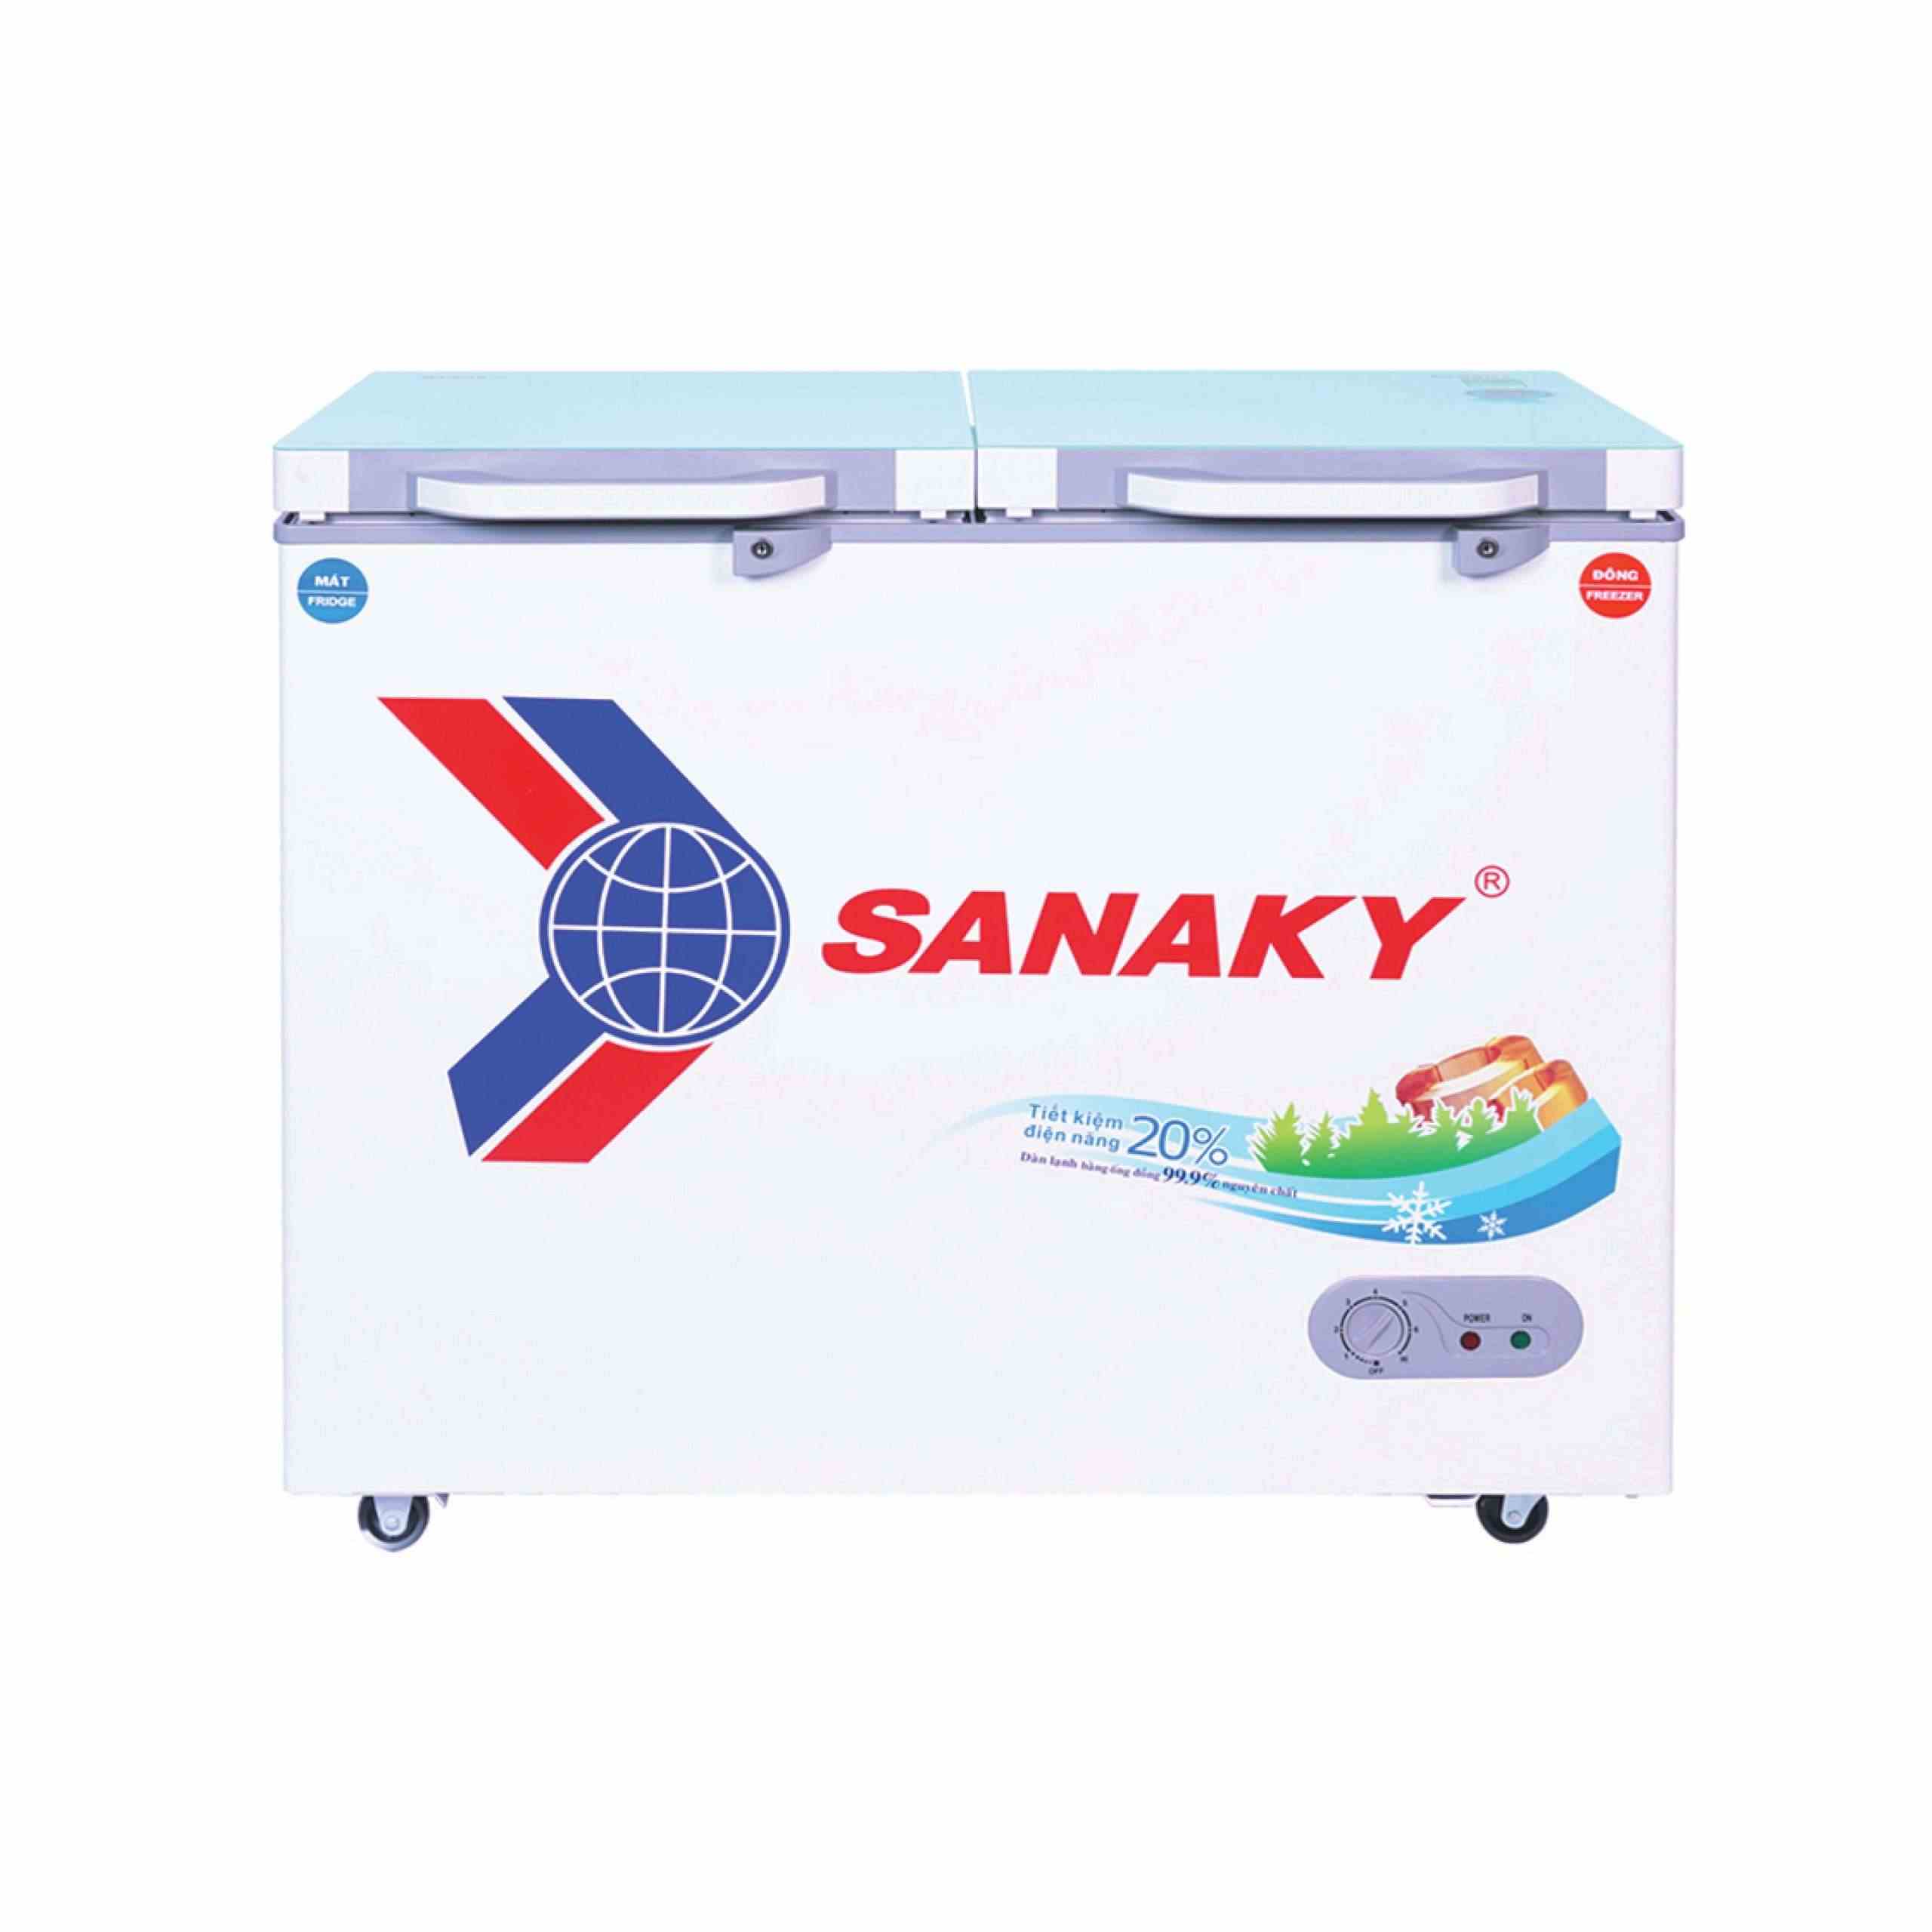 Tủ đông Sanaky 260 lít VH-3699W2KD 2 ngăn - Chính hãng